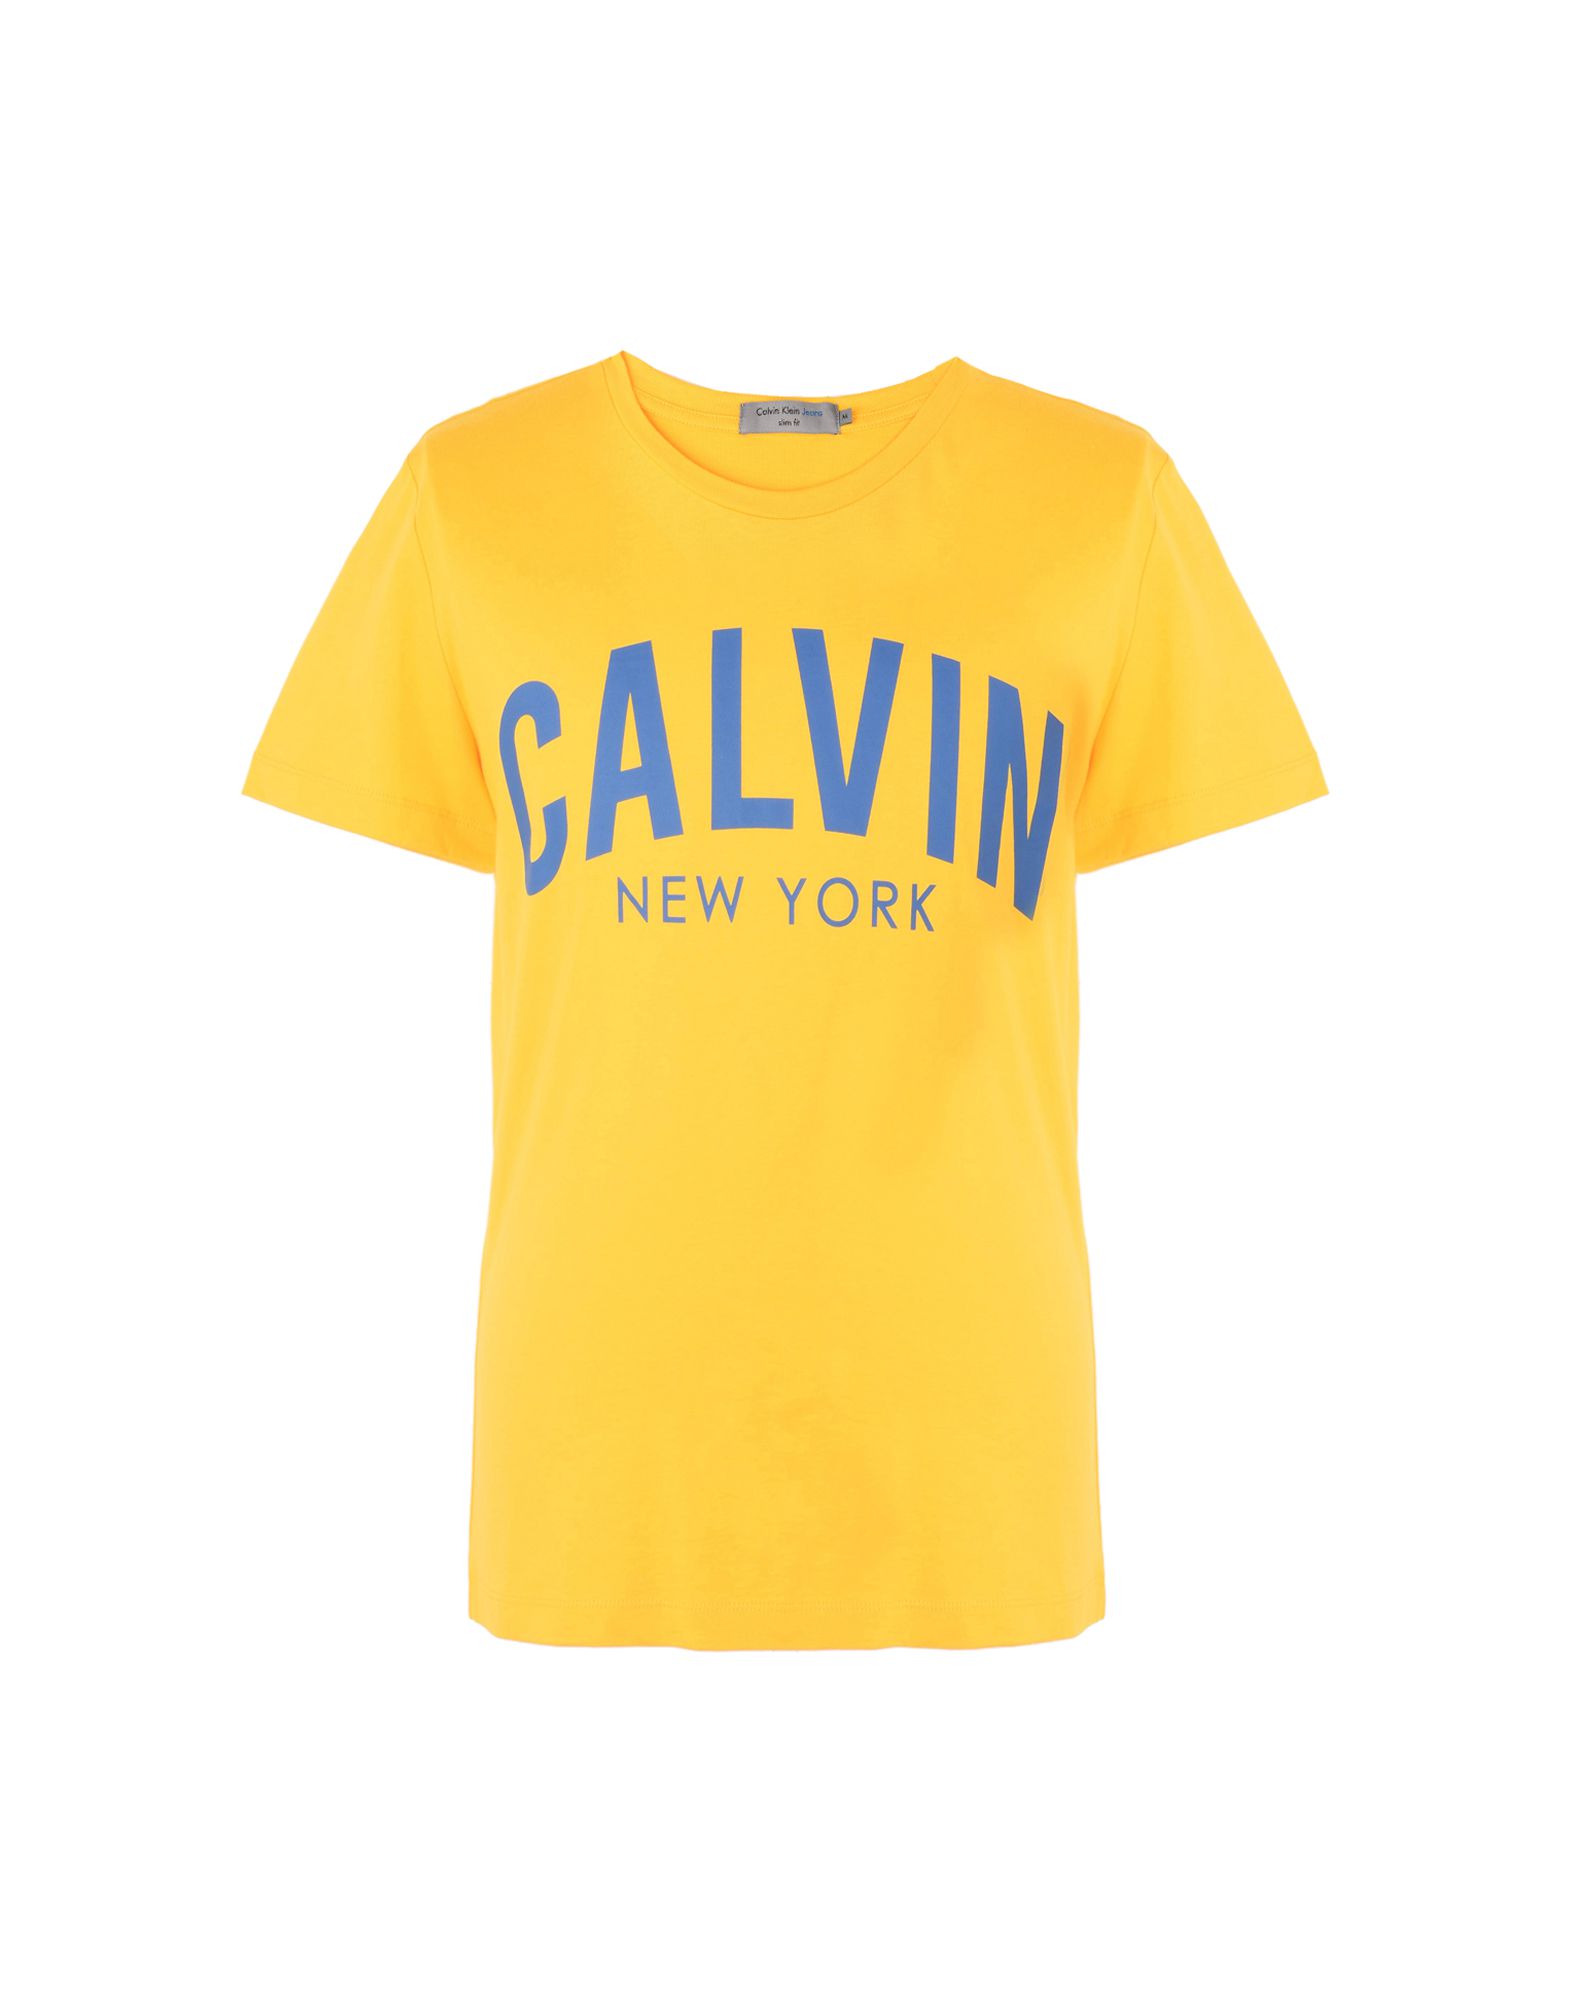 《送料無料》CALVIN KLEIN JEANS メンズ T シャツ イエロー S コットン 100% EUROPE MEN 4500210271